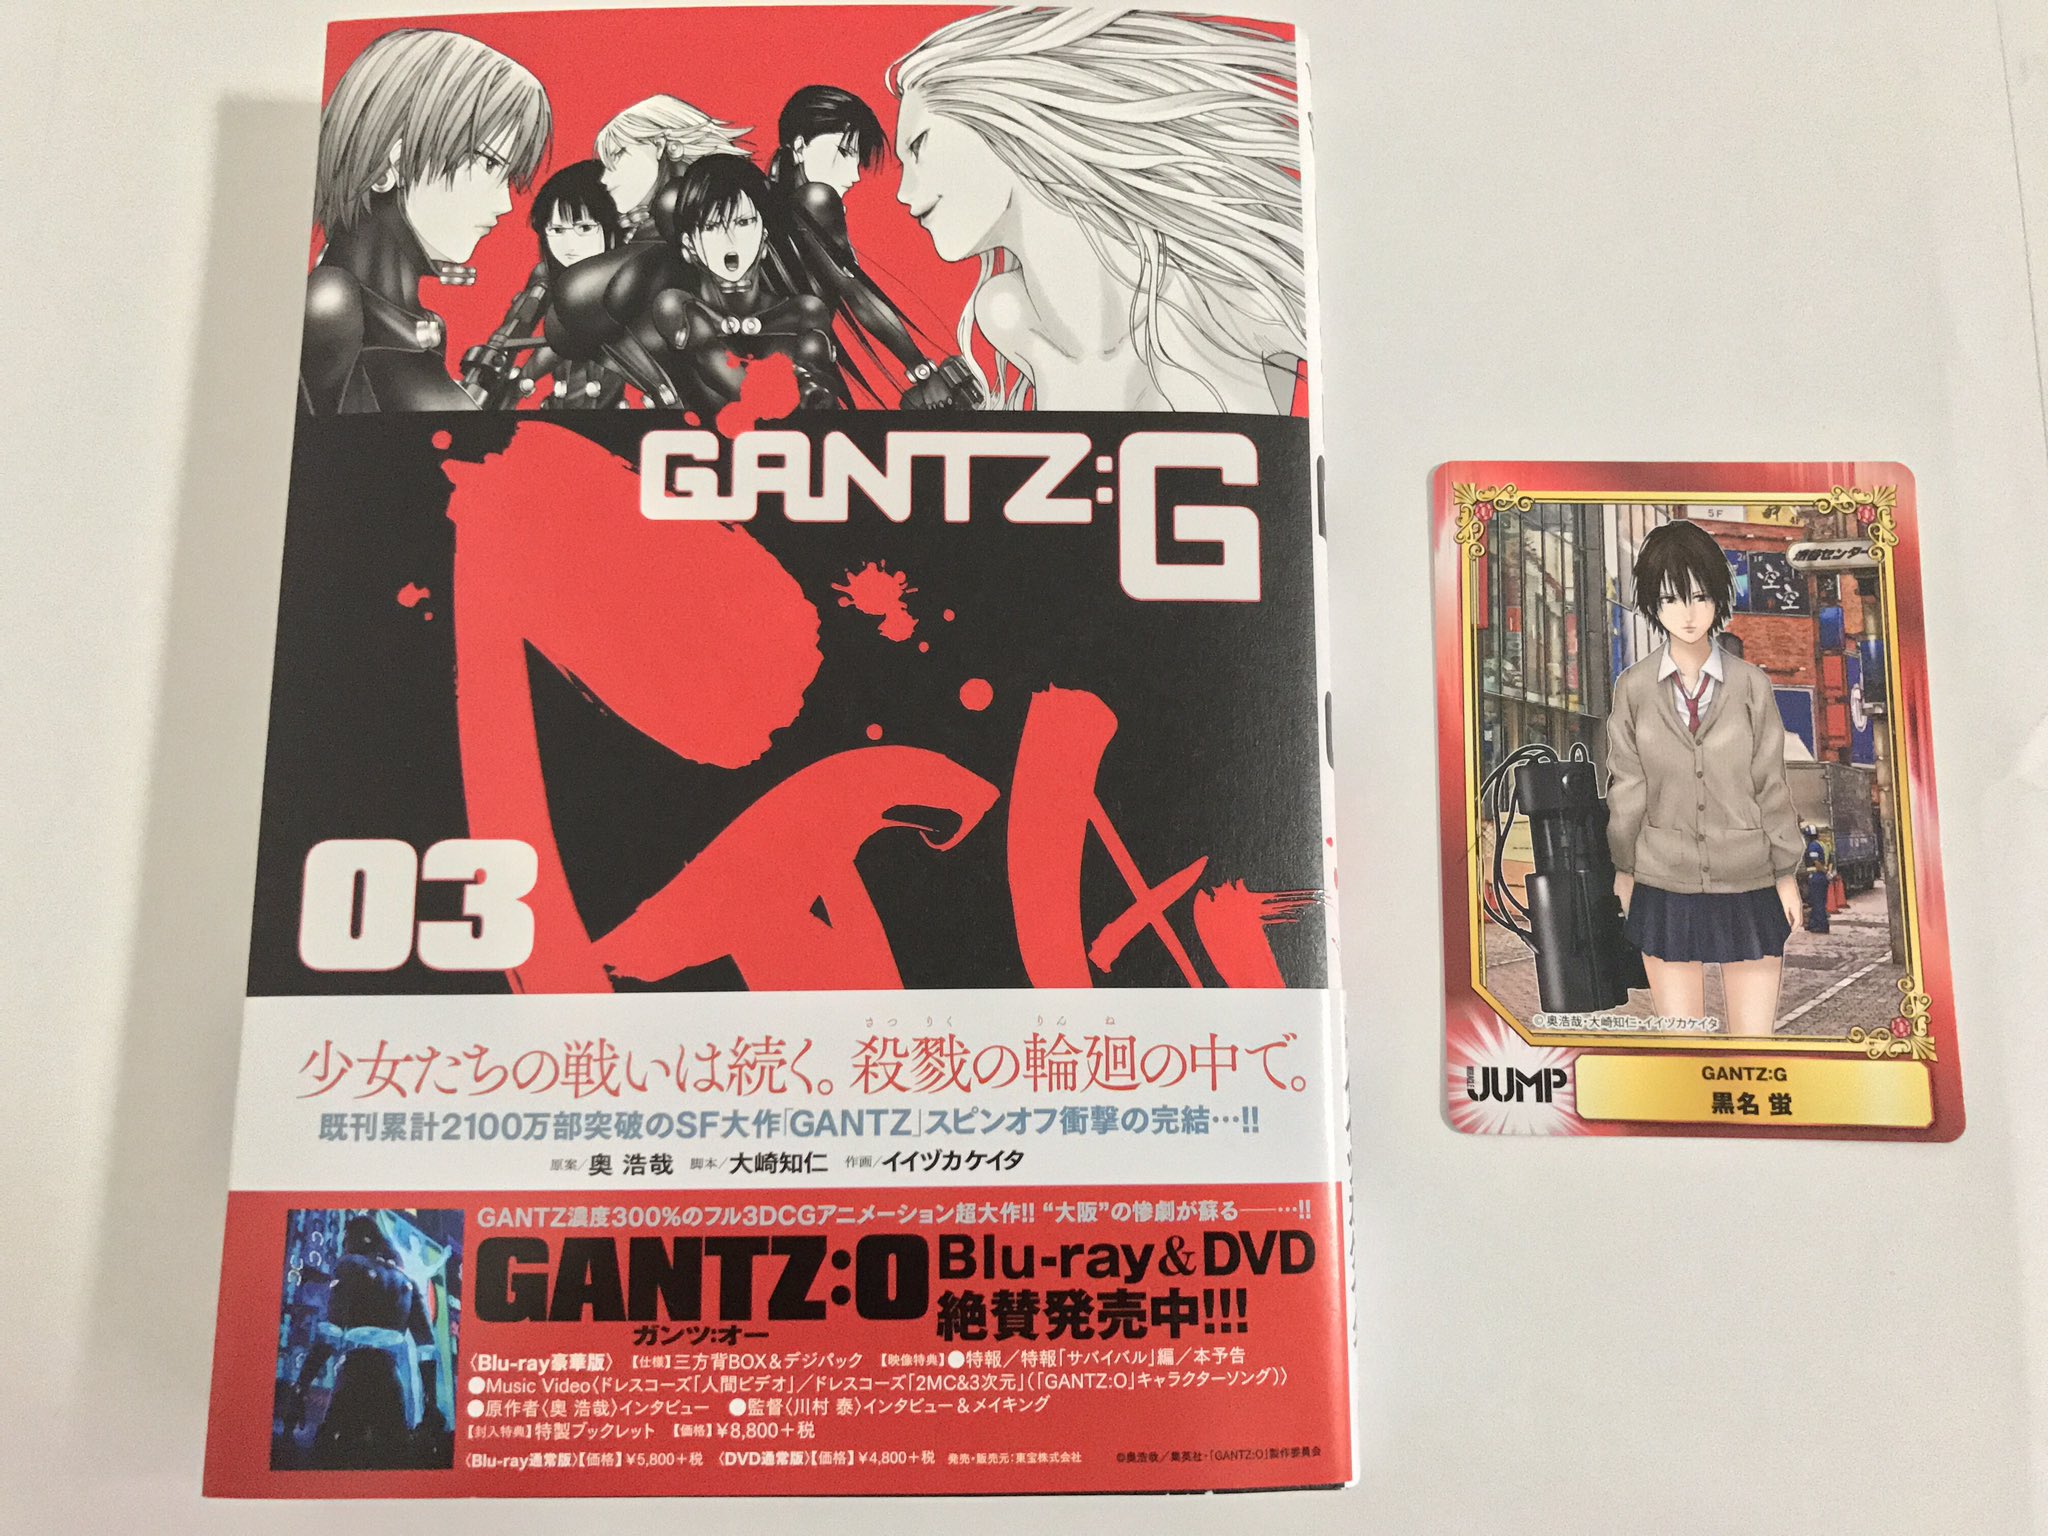 Uc00 本日発売の Gantz G 第３巻 アニメイト新宿店で購入 特典は黒名のカード これが最終巻だと思うとメチャ寂しい 涙 Gantz G が掲載されたミラクルジャンプは永久保存しよっと ひとまず イイヅカ先生お疲れさまでしたっ でも いつか 続編